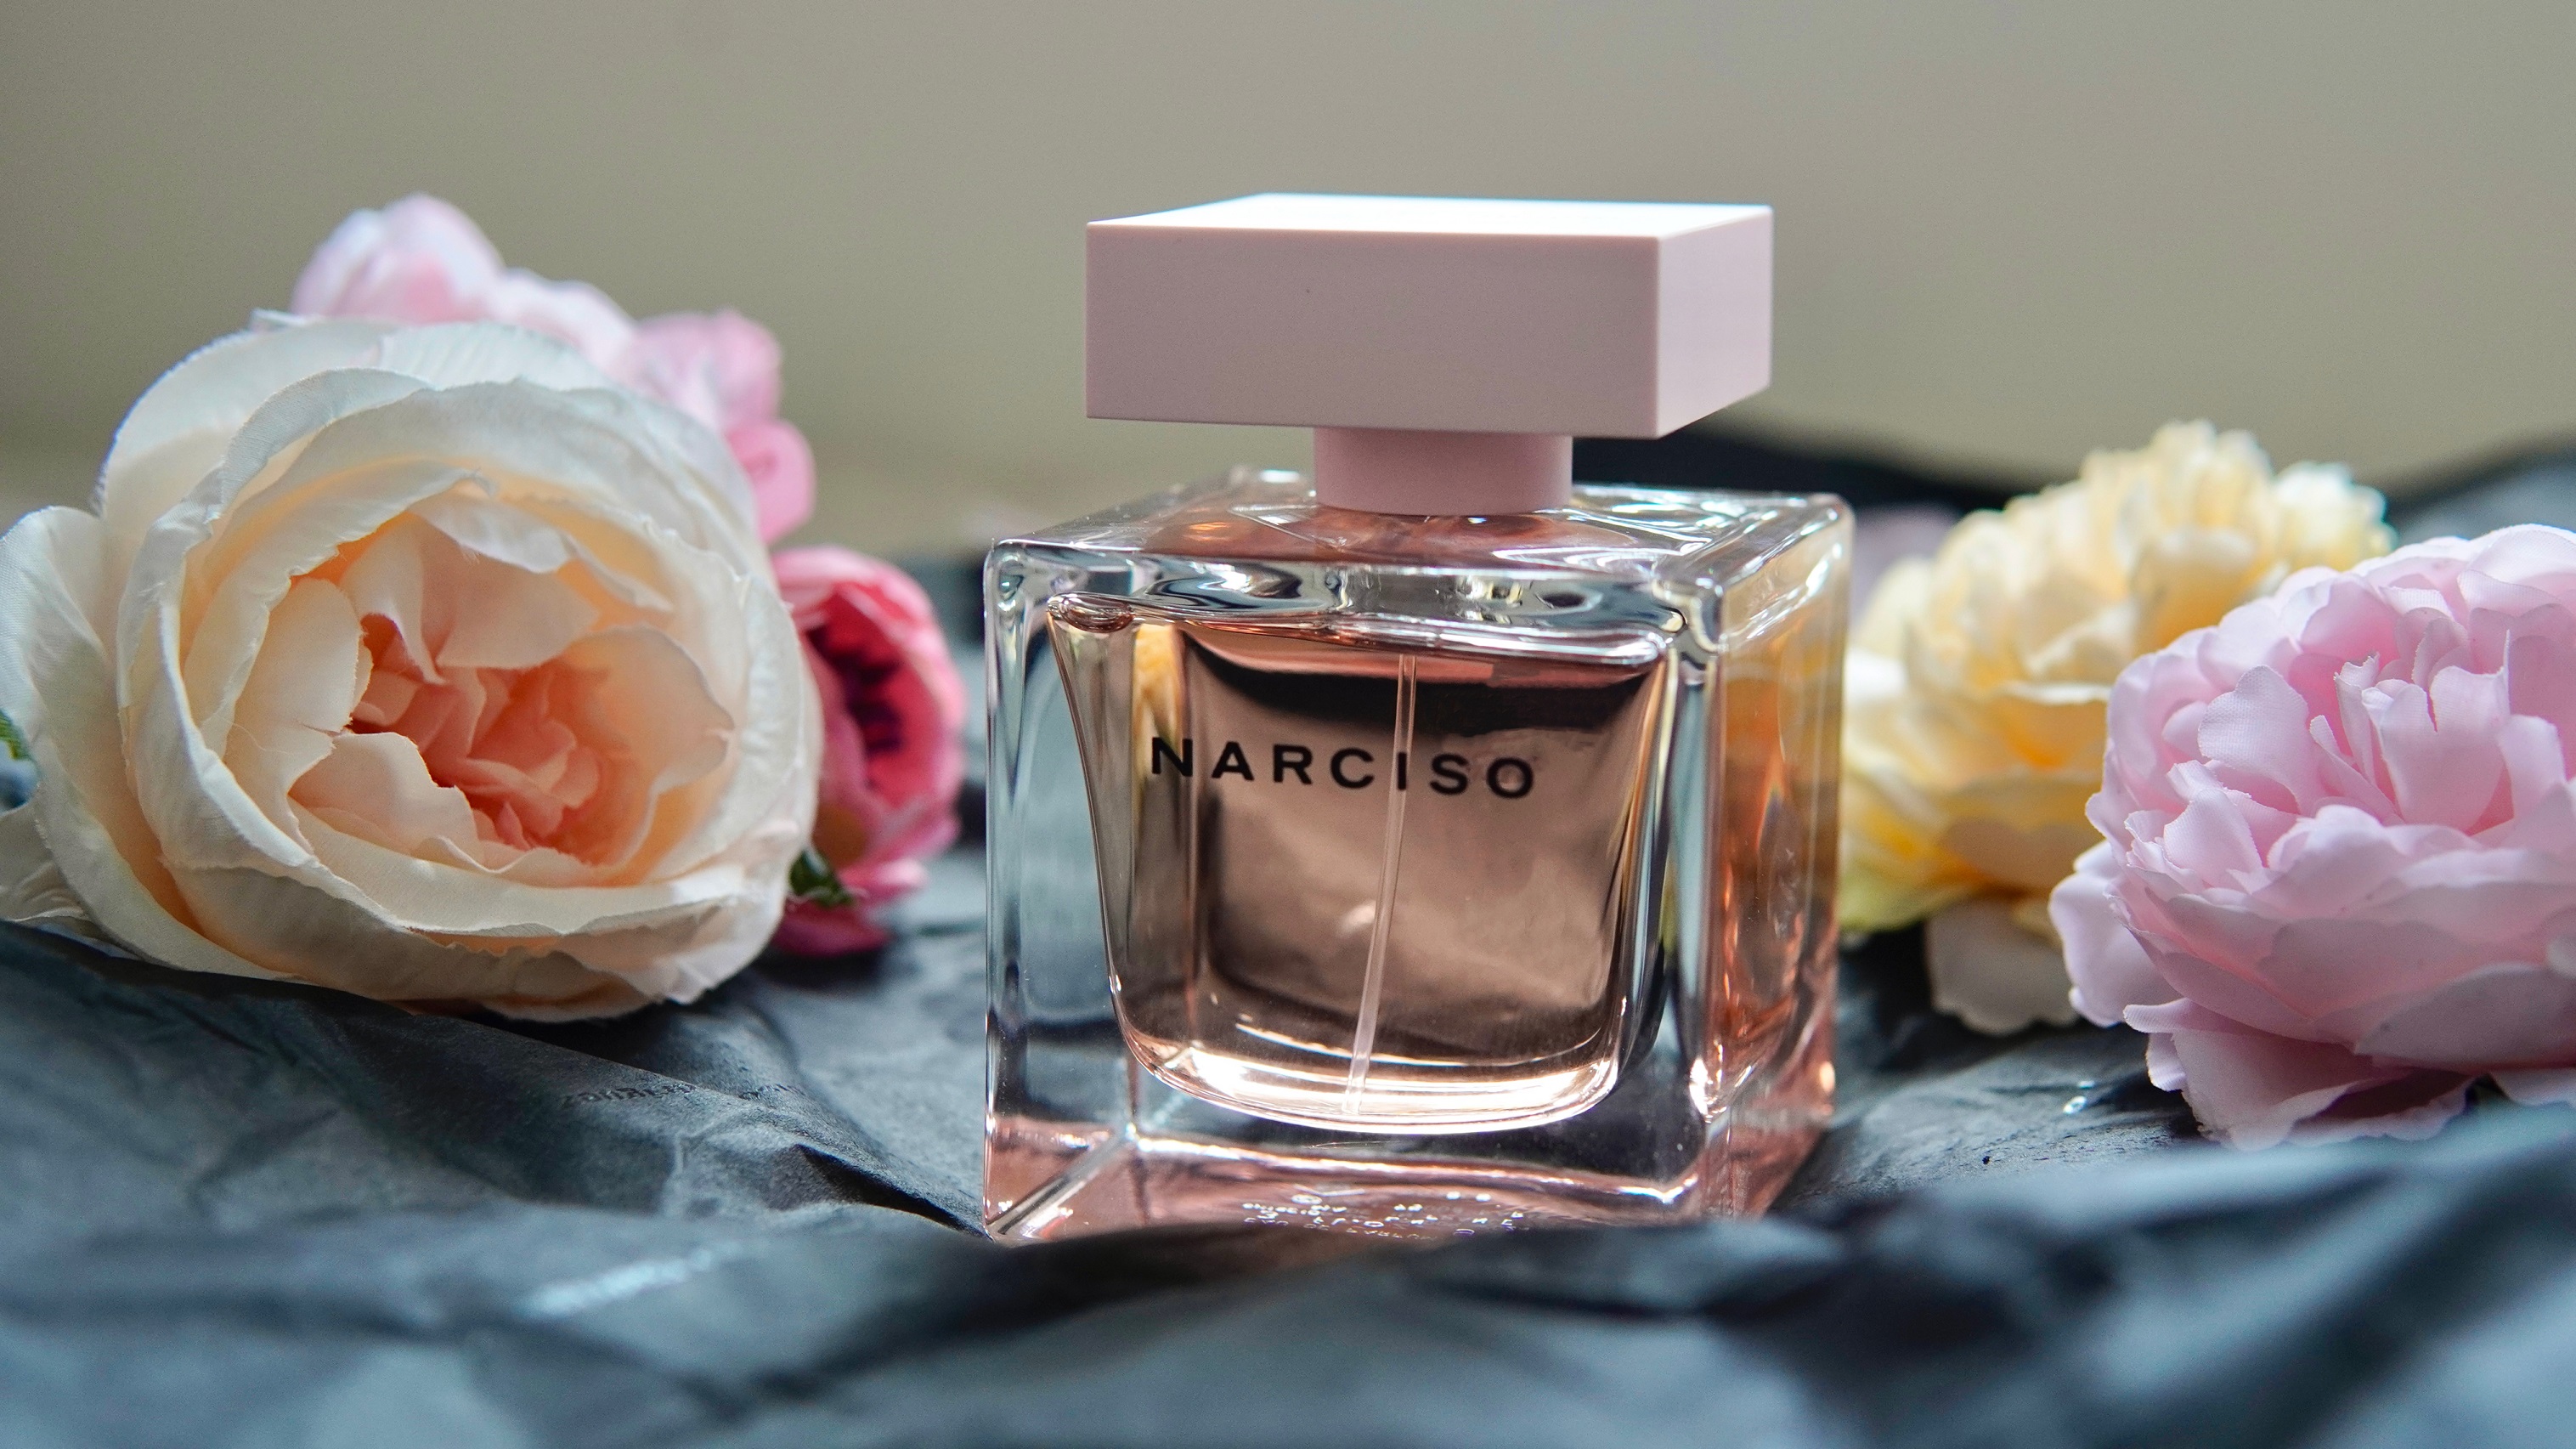 【美容】以香味展現內在美 NARCISO全新cristal淡香精